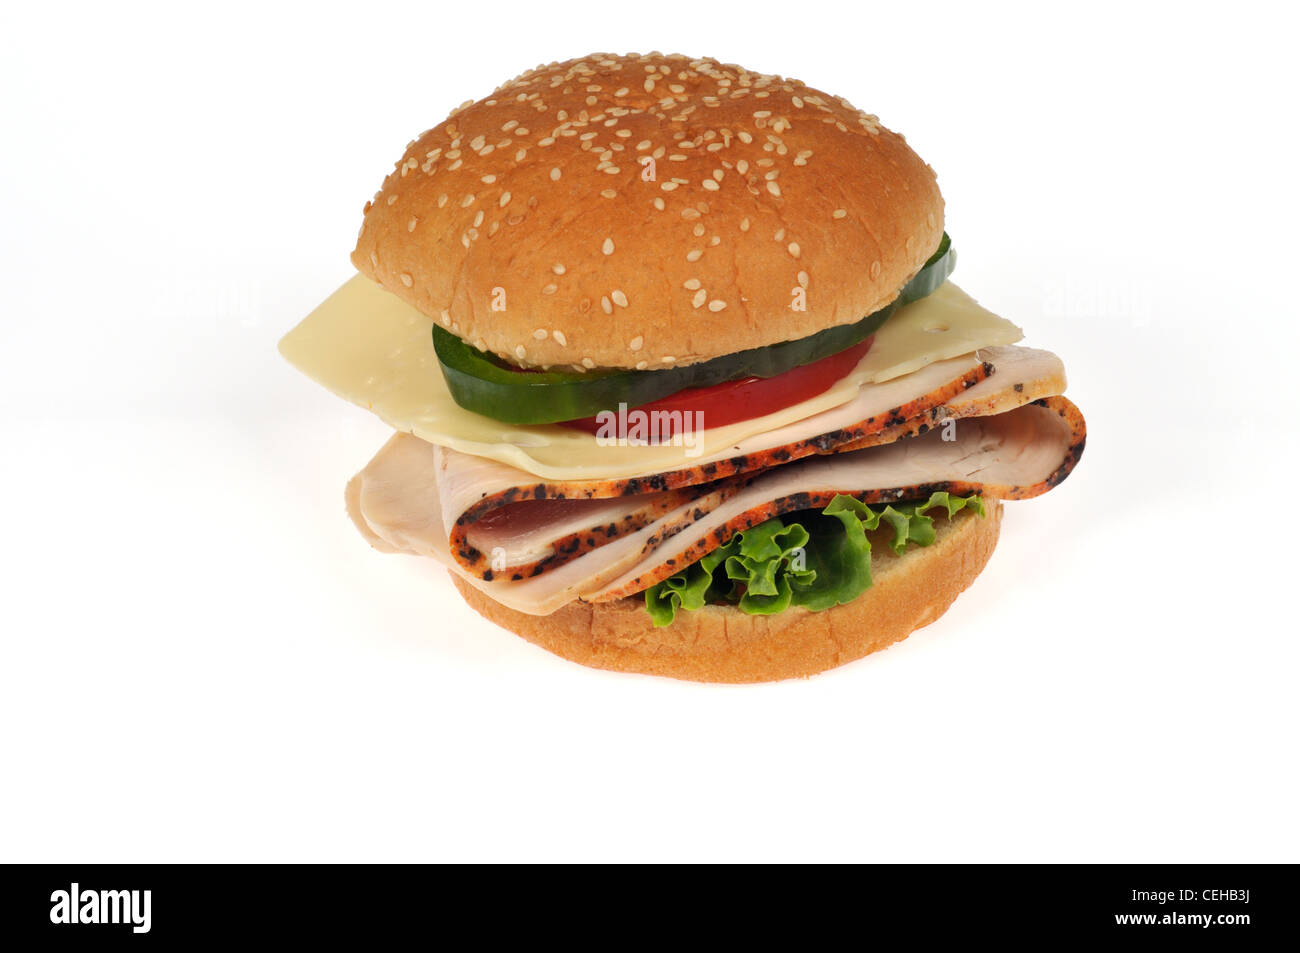 In Scheiben geschnitten Türkei mit Käse, Rollen Salat, Tomaten und grünem Pfeffer Sandwich auf Sesam auf weißem Hintergrund Ausschnitt. Stockfoto